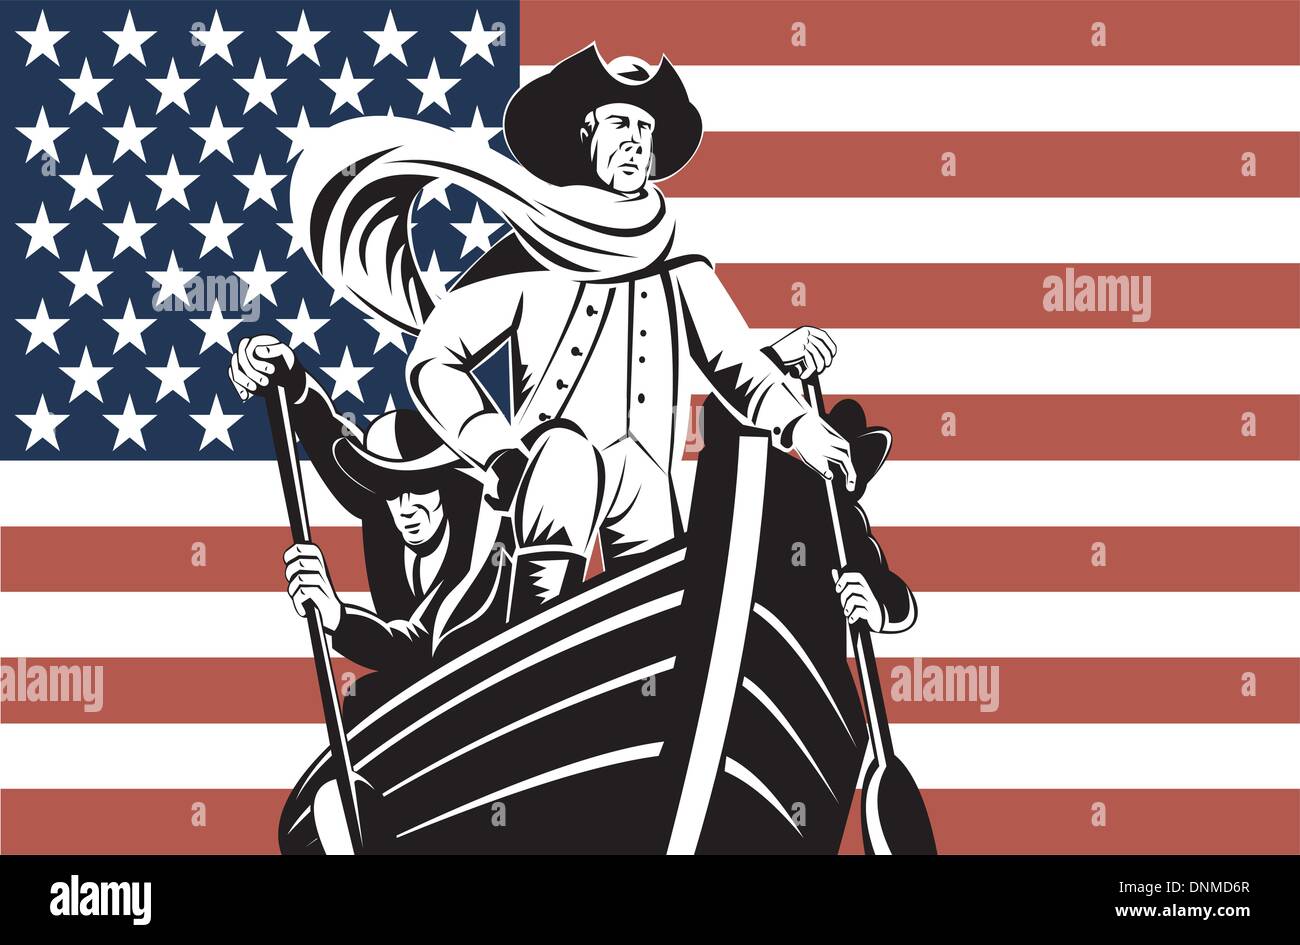 Illustration avec l'indépendance américaine soldat ou général à tête de voile avec des stars and stripes flag Illustration de Vecteur